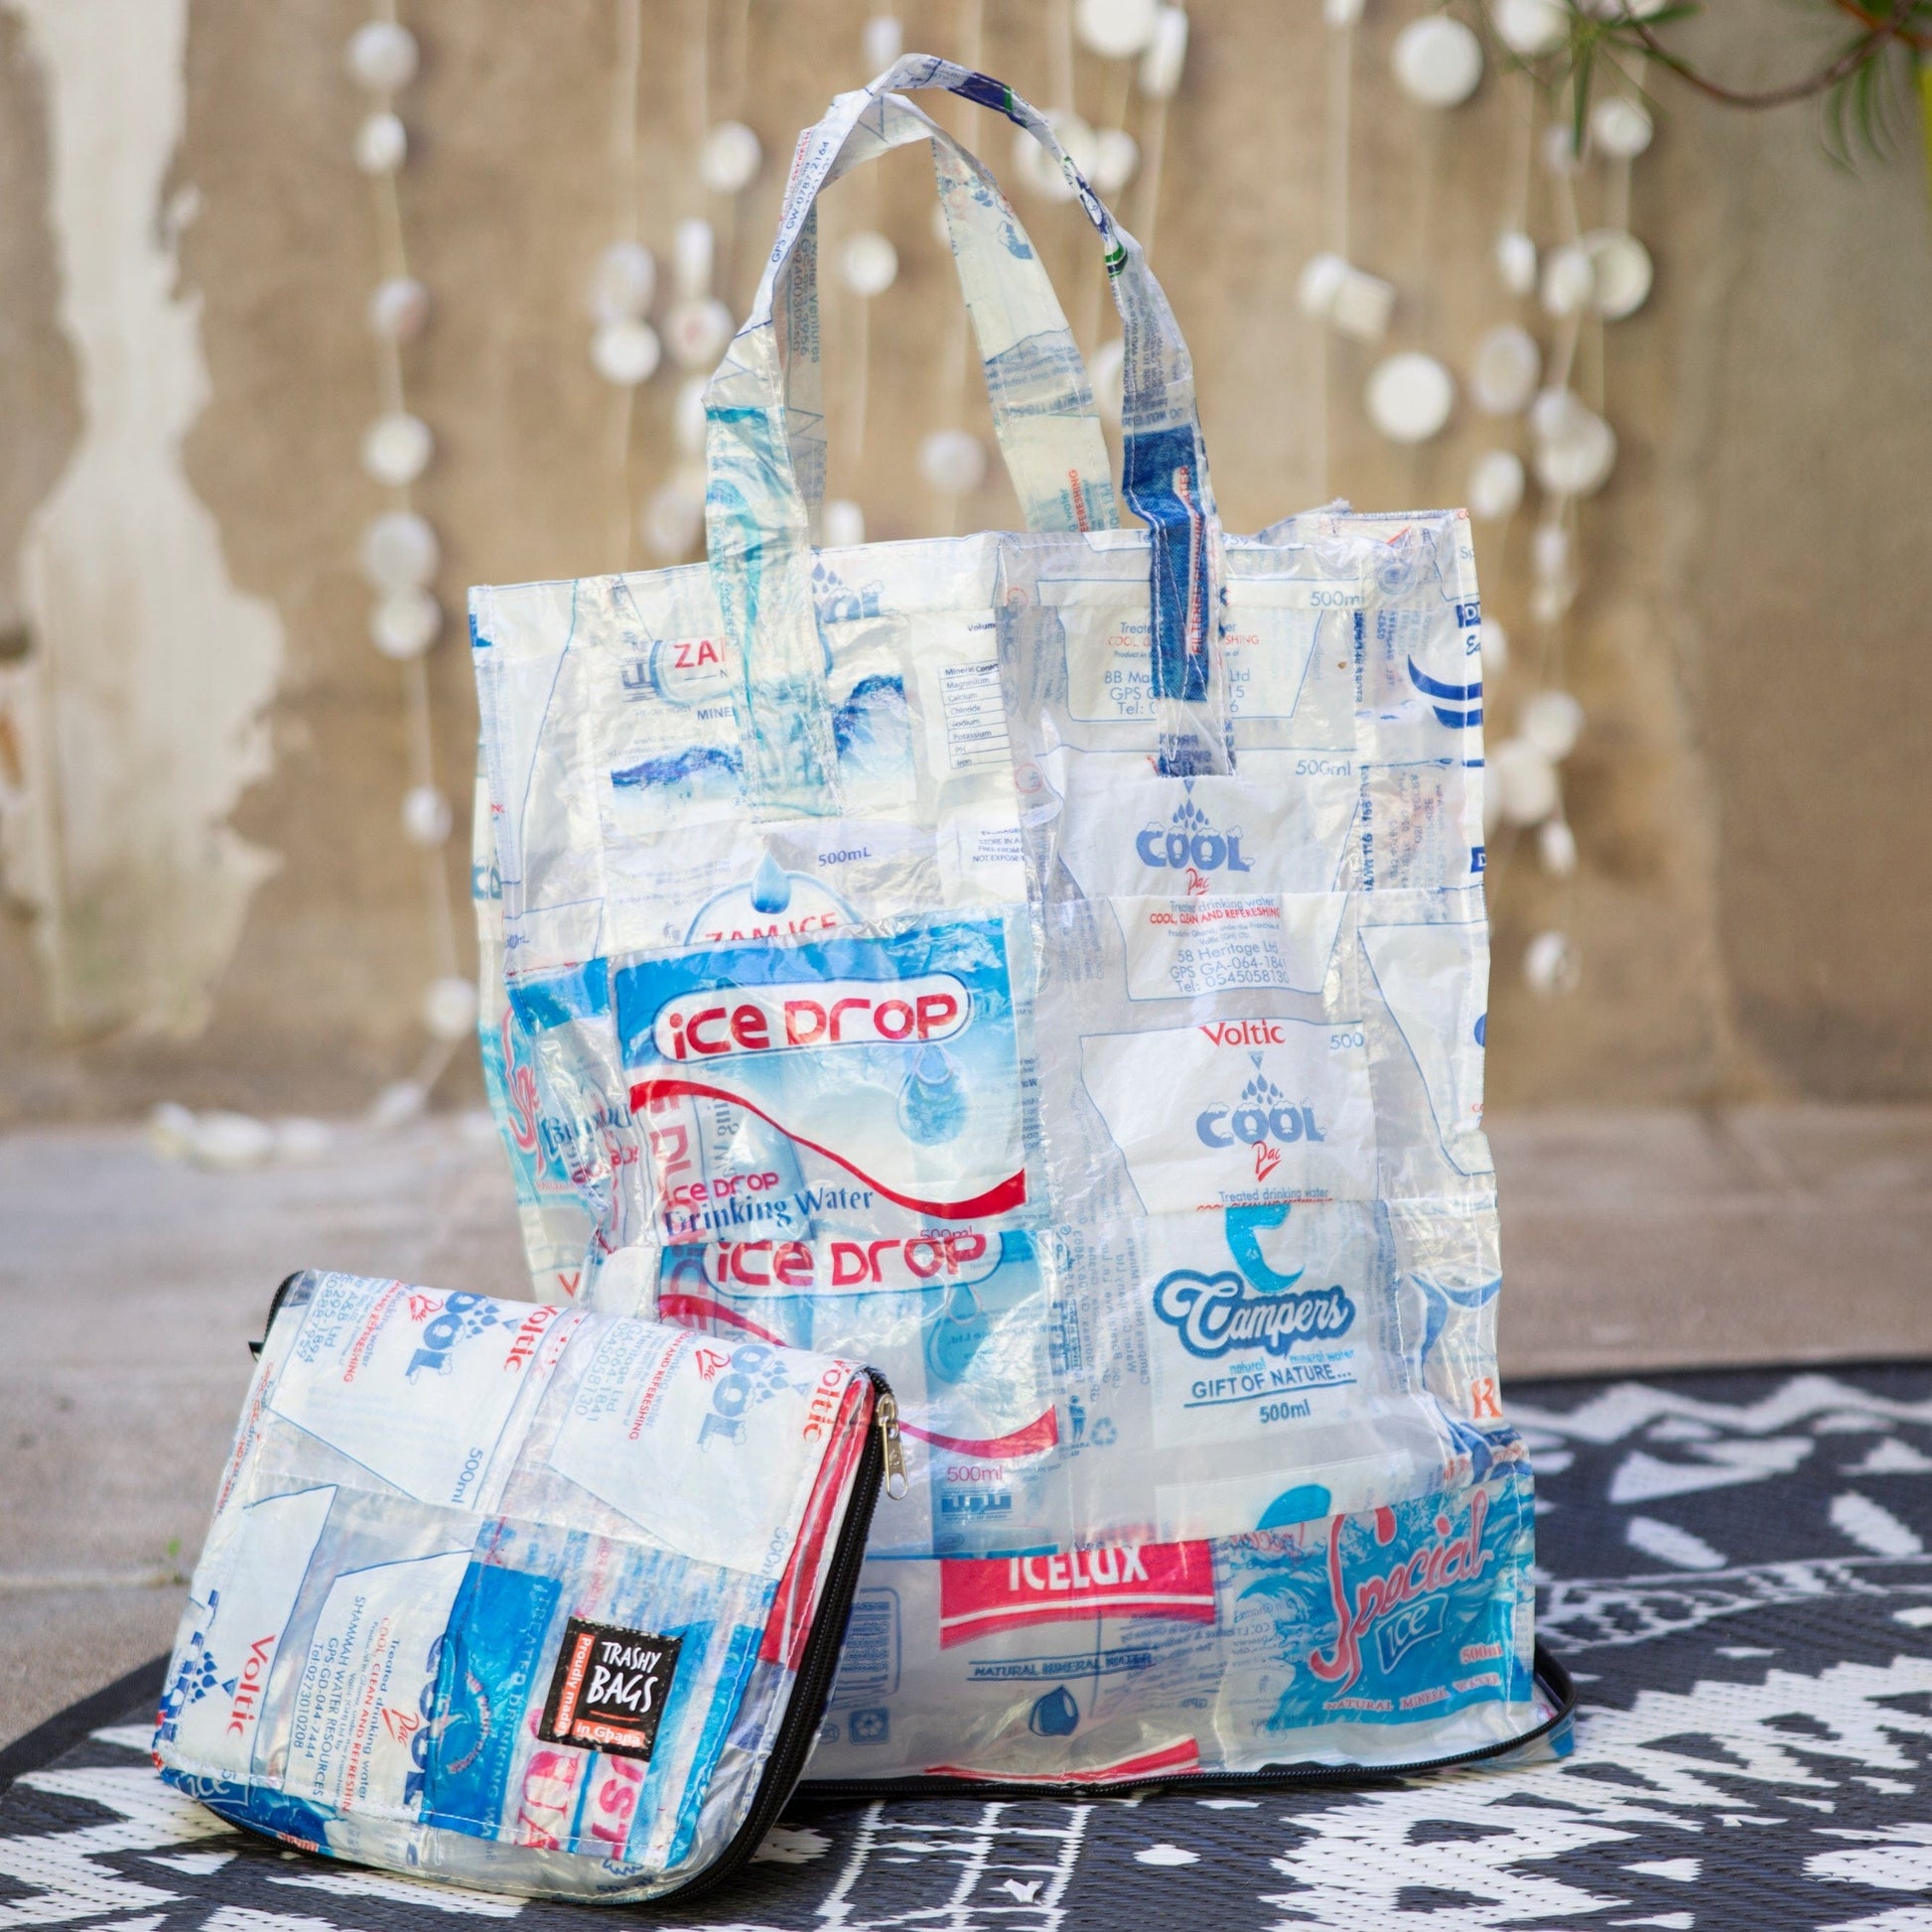 Trashy Smart Bag - sac écologique recyclé à partir de sachets d'eau po –  BEVERLY SMART